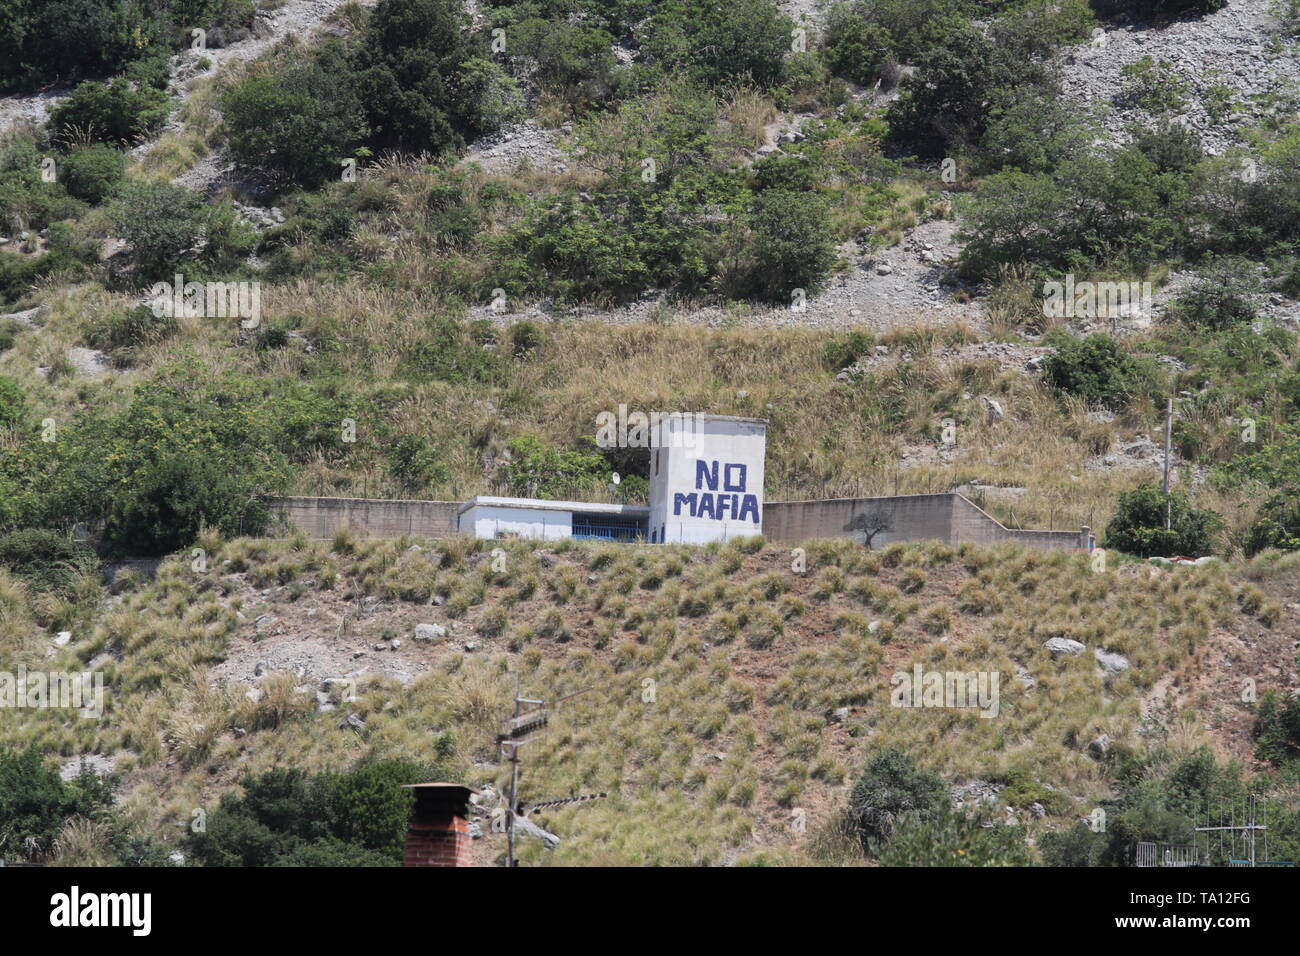 Capaci, Italien - 4. Juli 2016 - Das Denkmal auf dem Gelände des Massakers vom 23. Mai 1992 über die Autobahn A29 Stockfoto